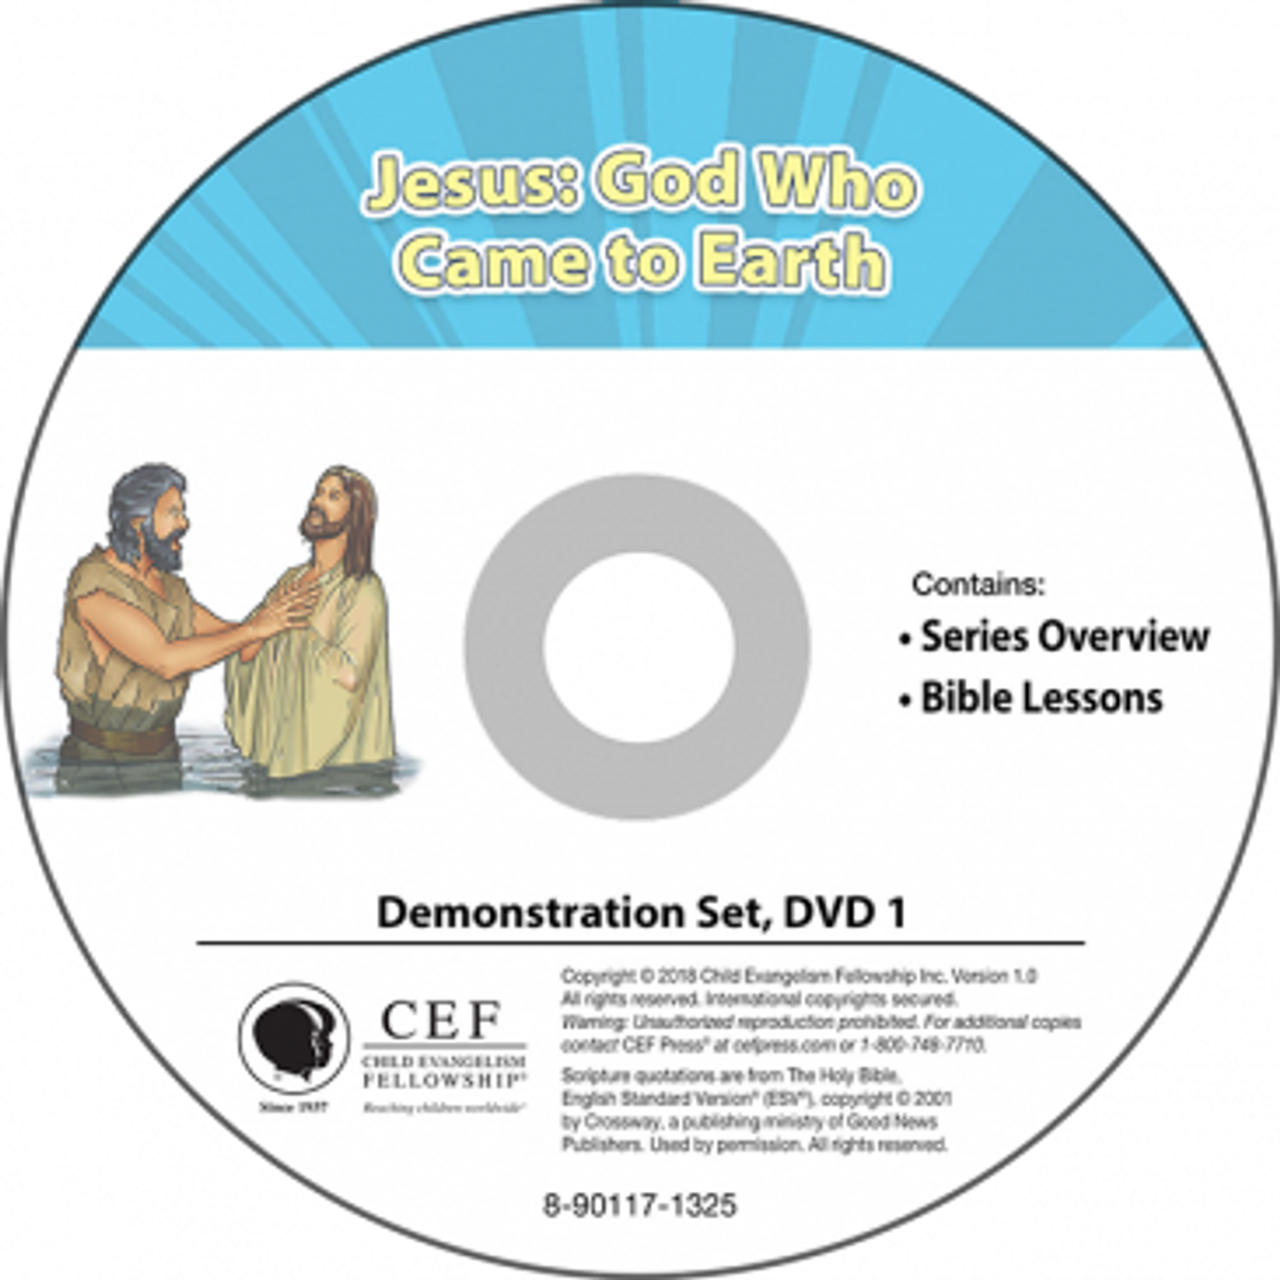 Jesus: God who came to earth 2018 (demo)